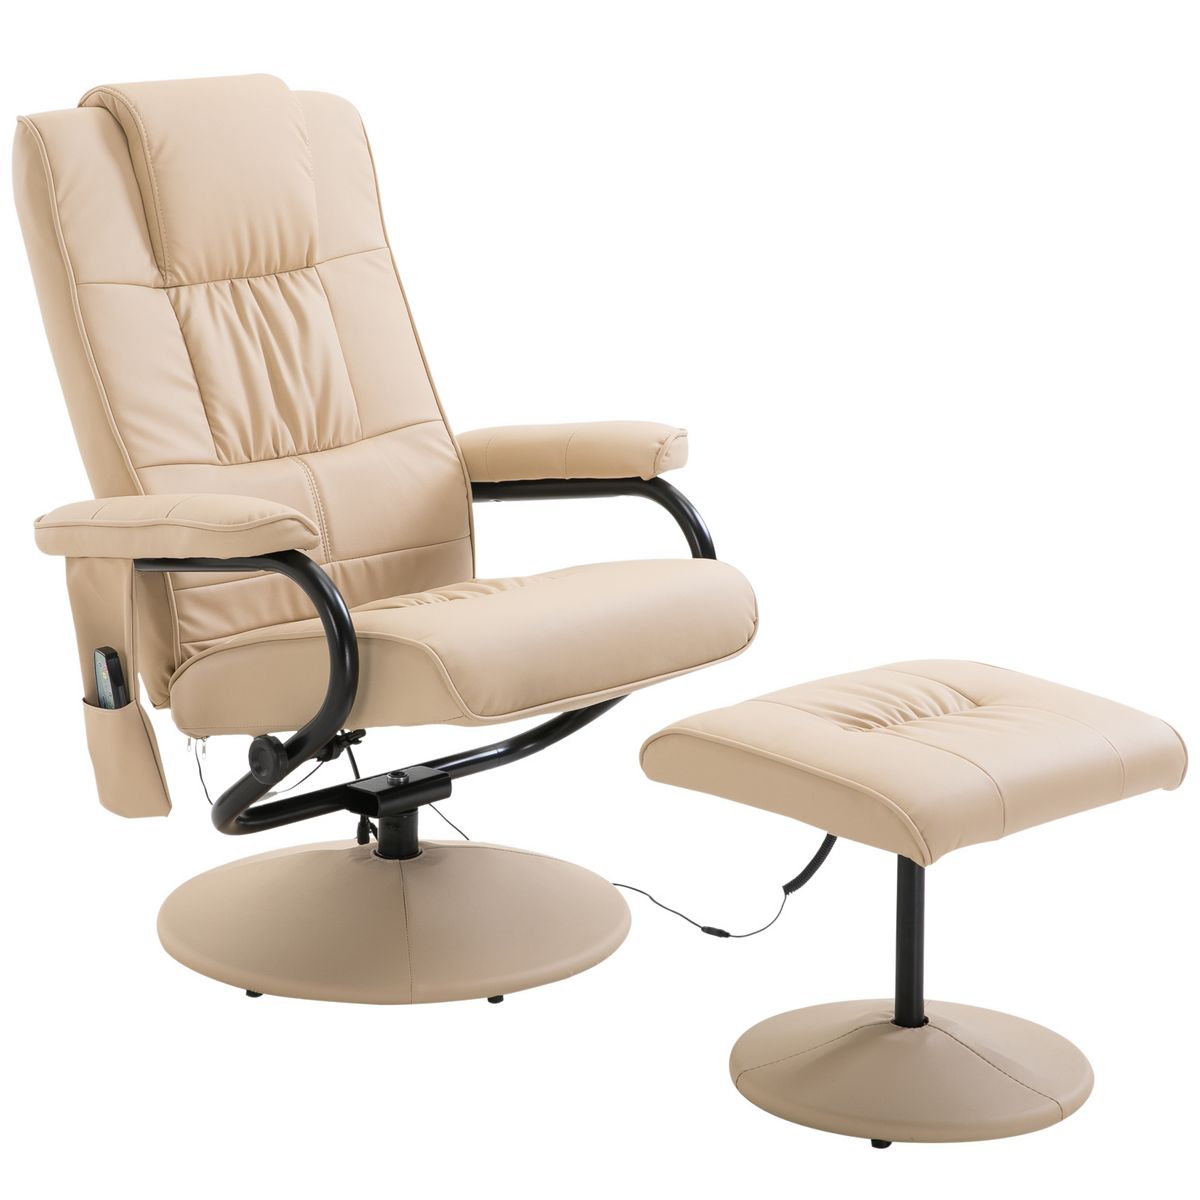 HOMCOM Fauteuil de massage vibration electrique relaxation avec chauffage beige